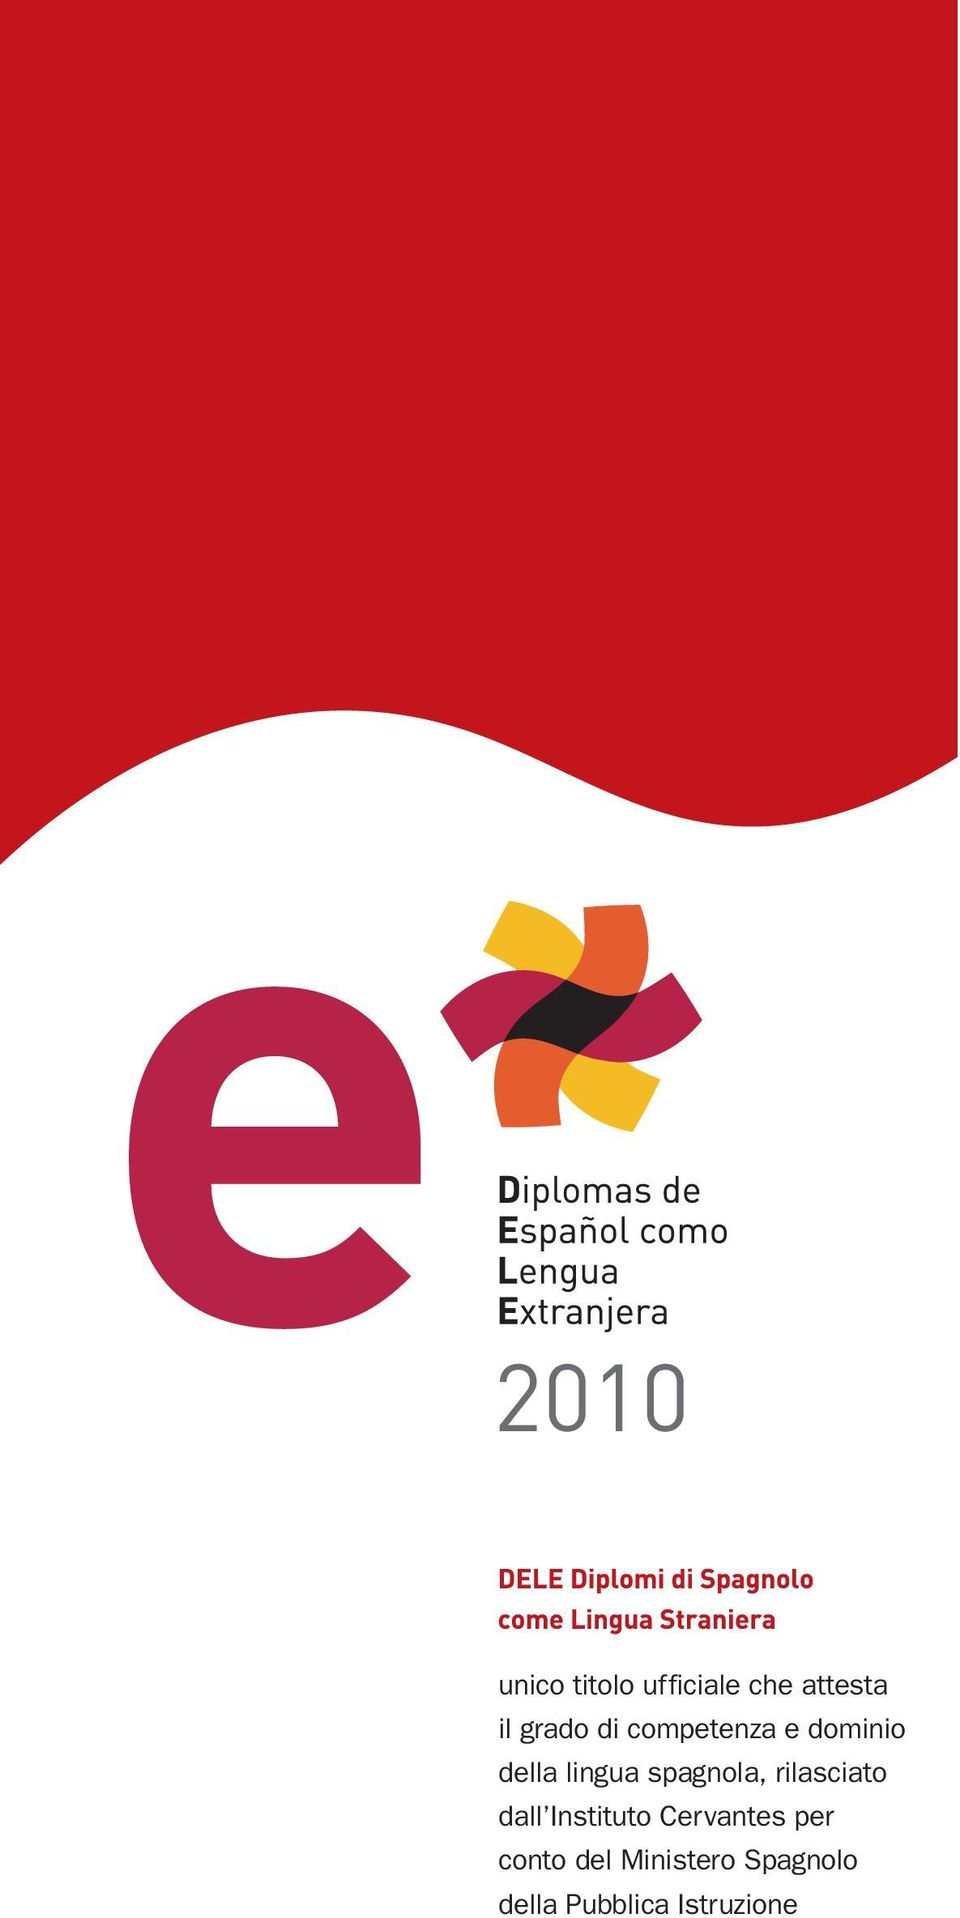 spagnola, rilasciato dall Instituto Cervantes